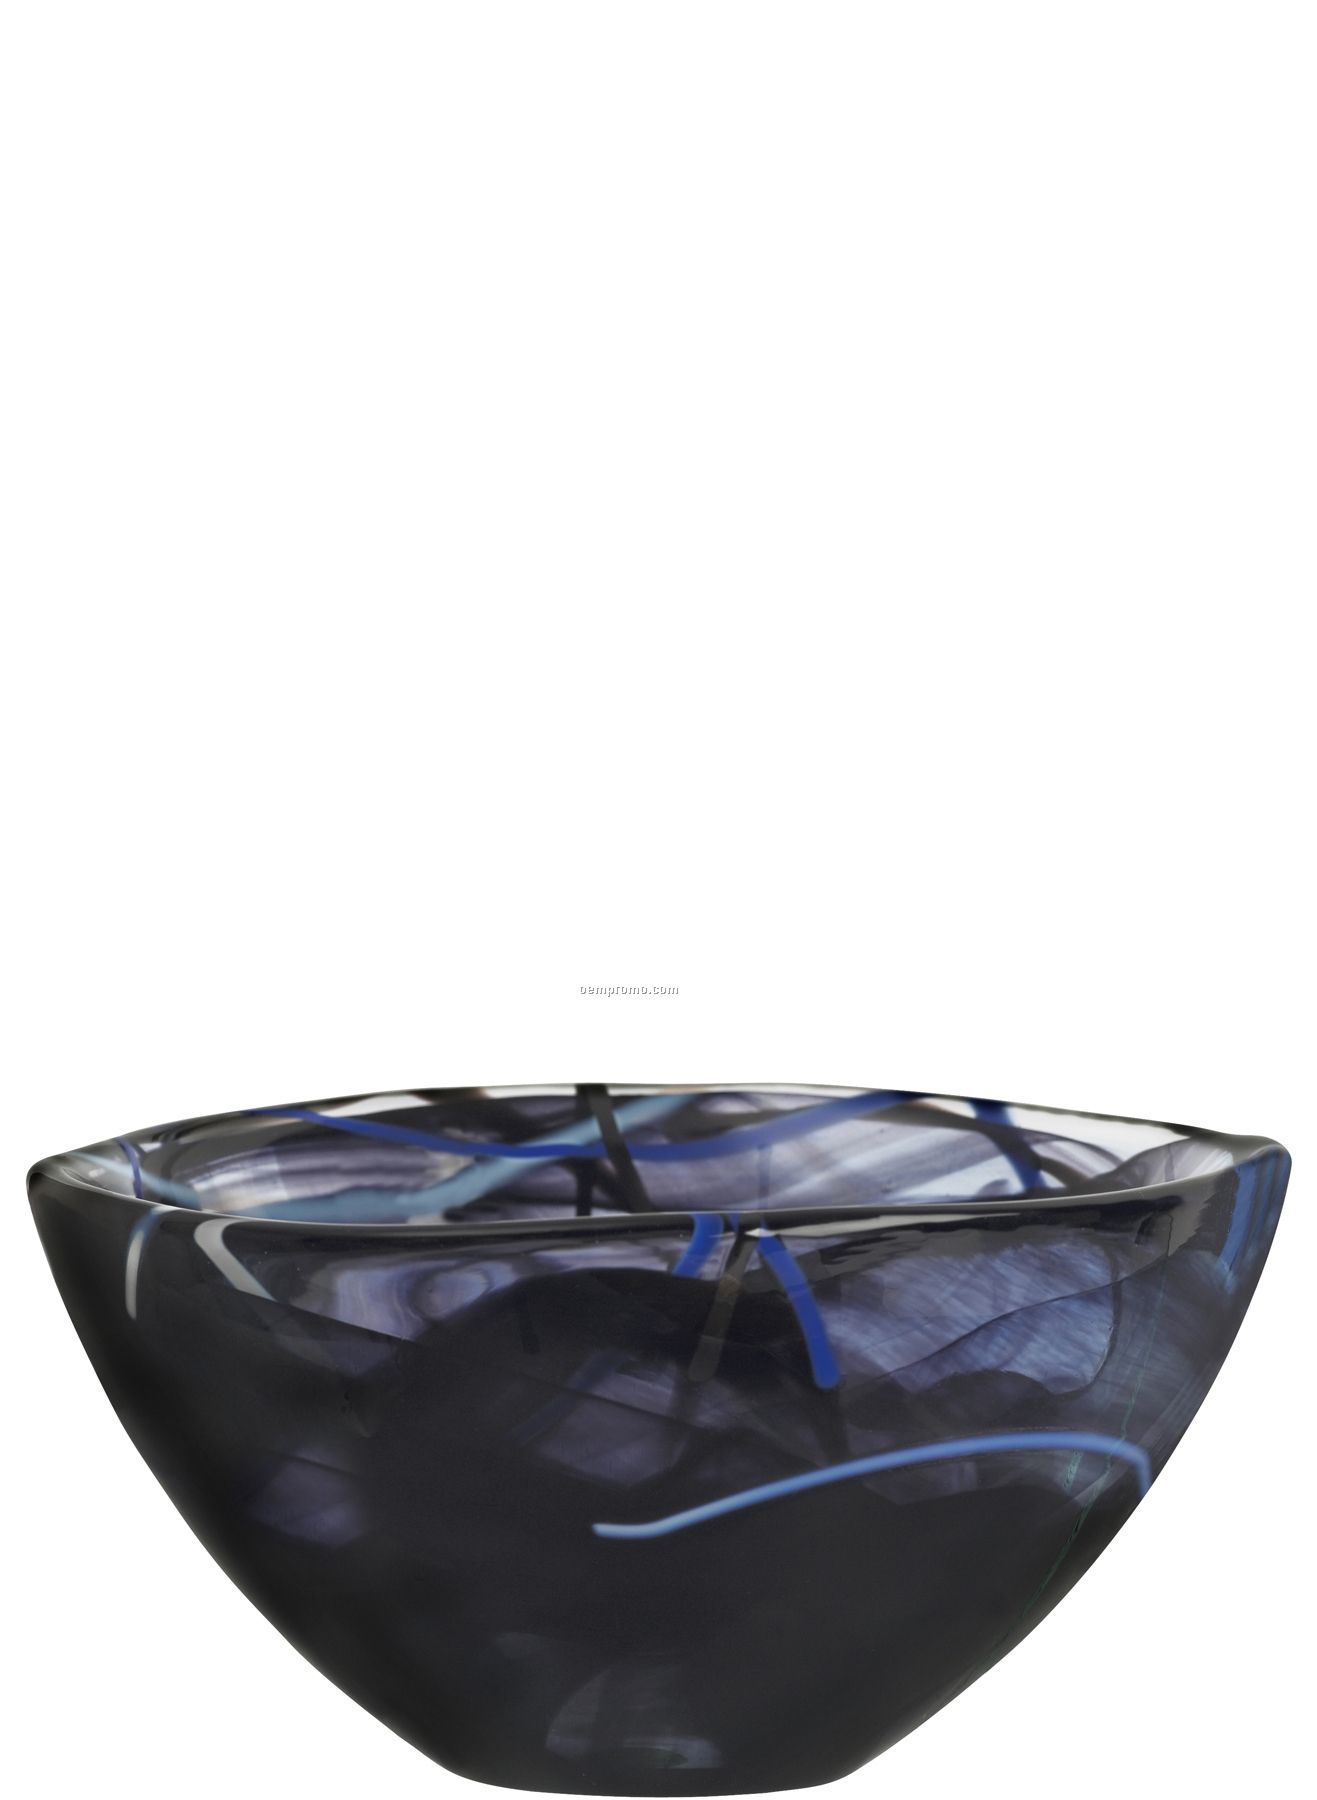 Contrast Small Swirl Crystal Bowl By Anna Ehrner (Black)